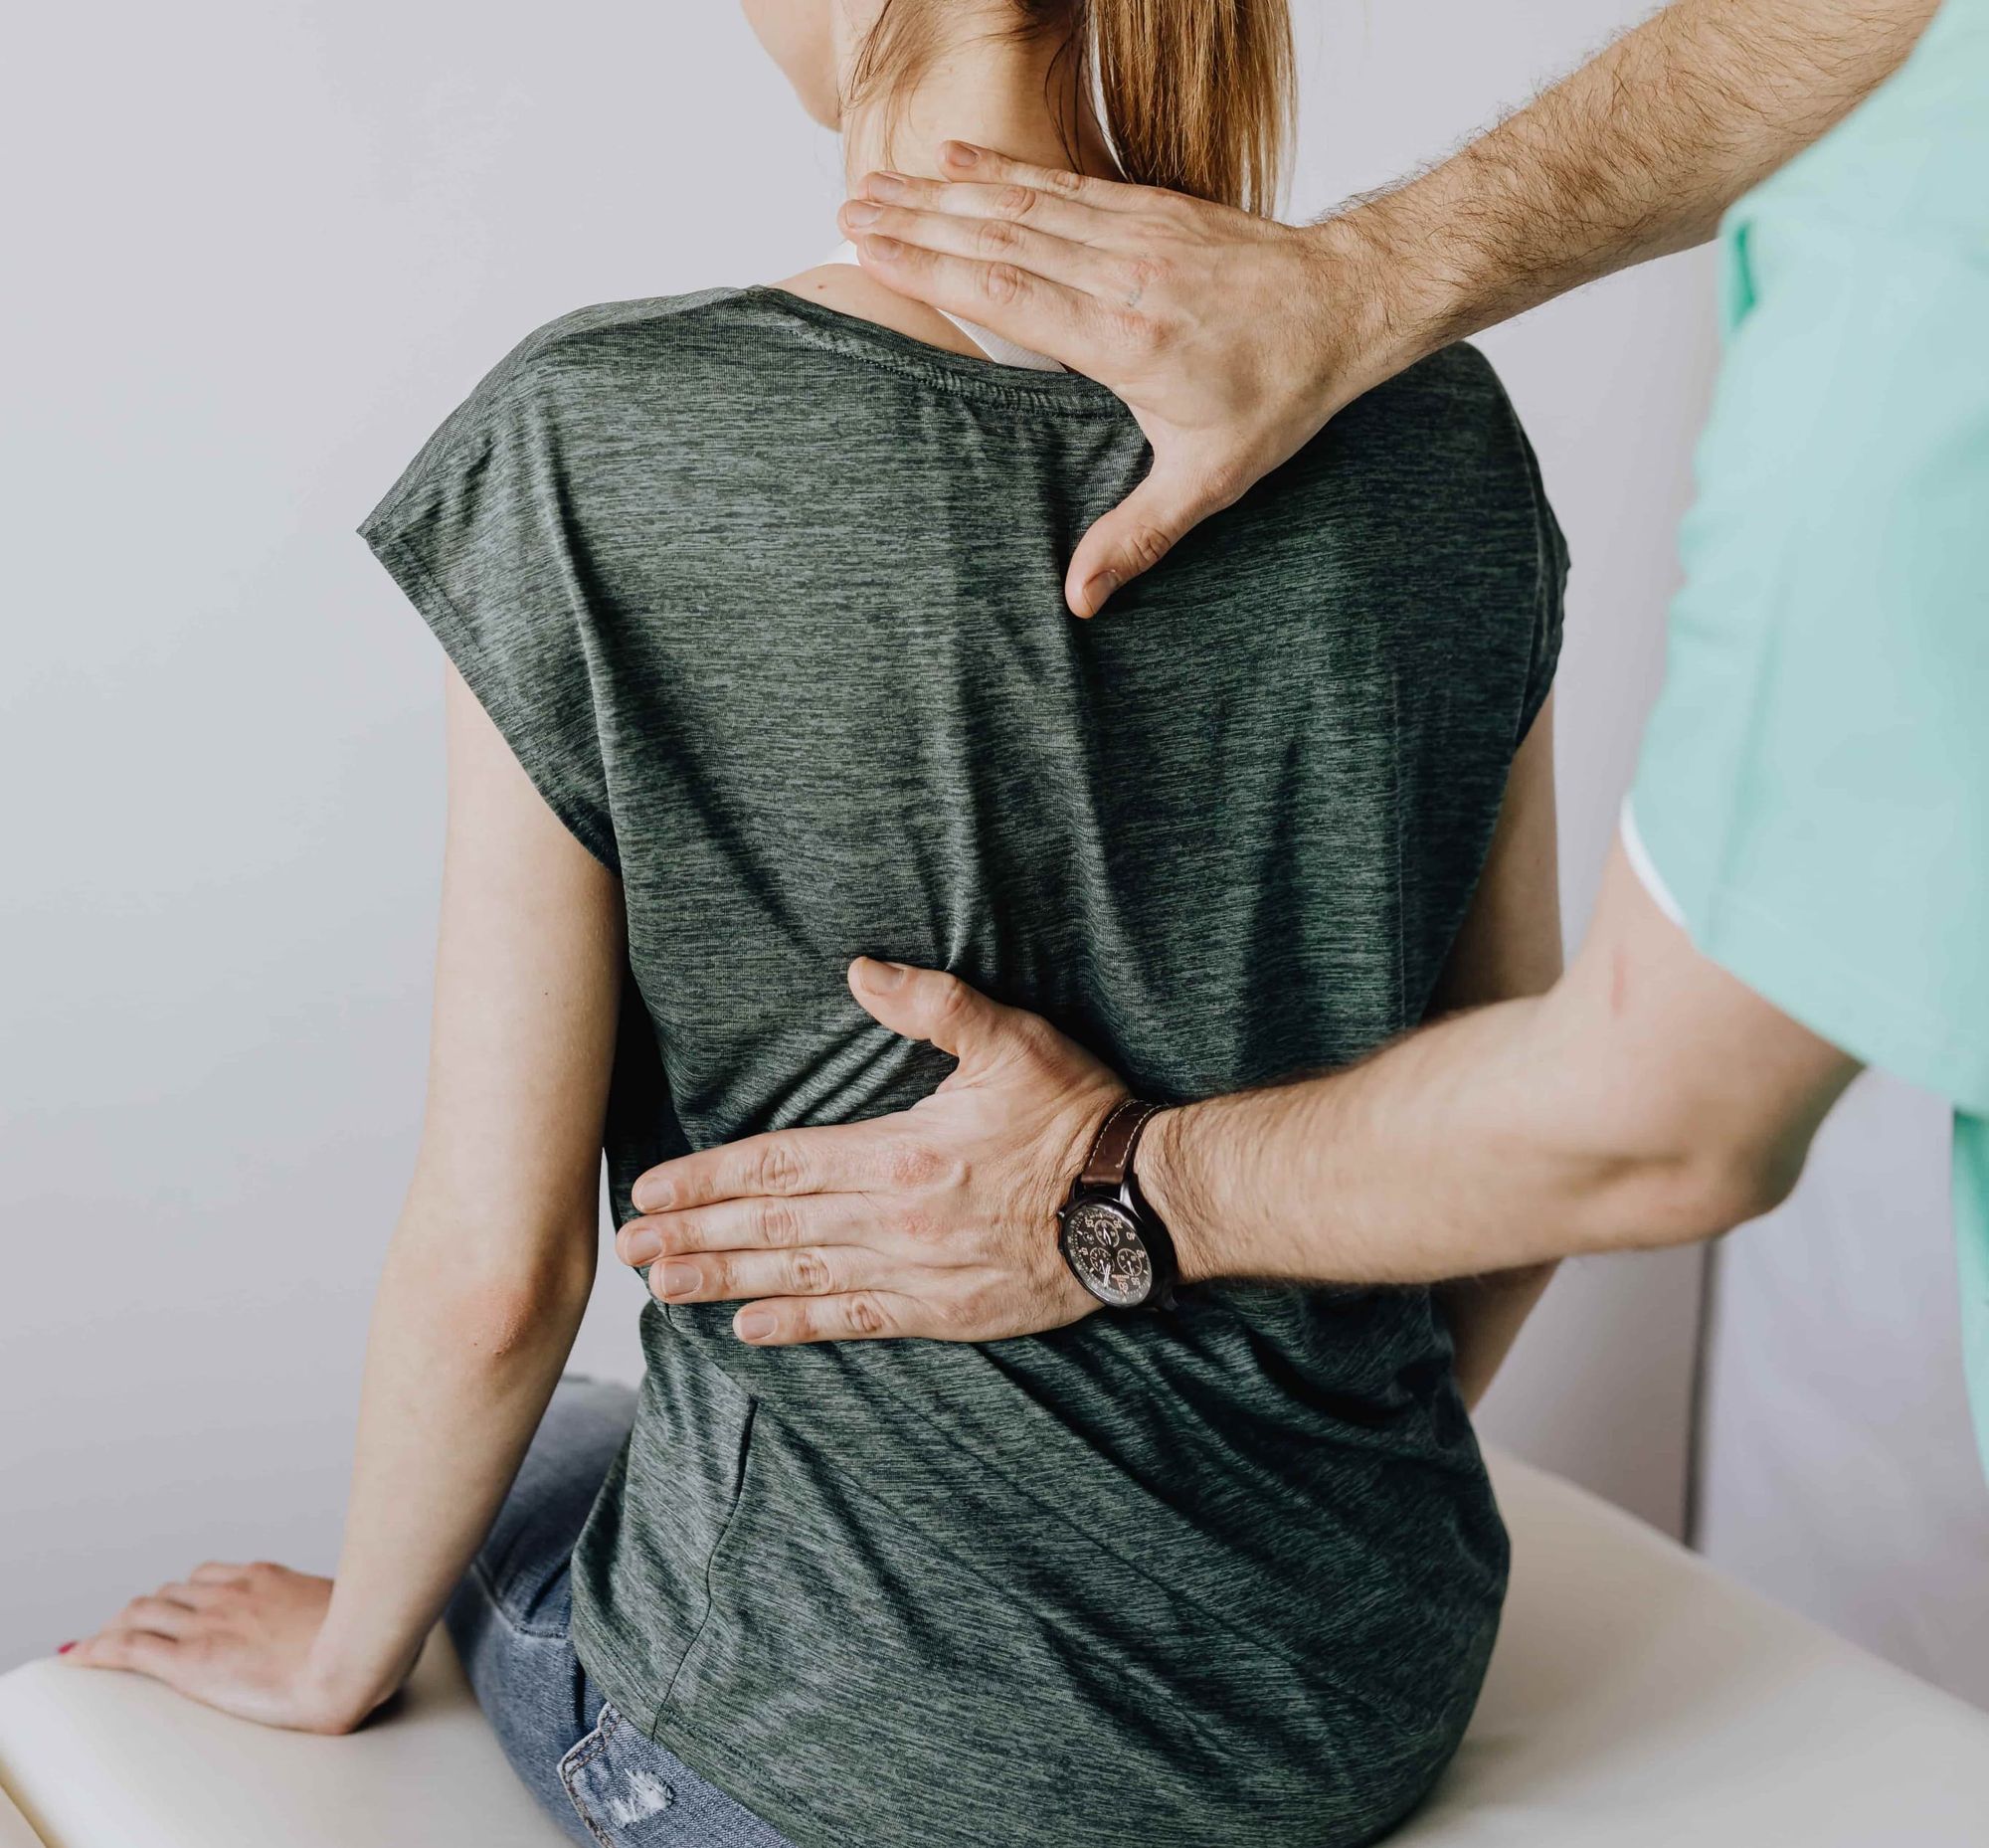 back pain, injury or kidney disease